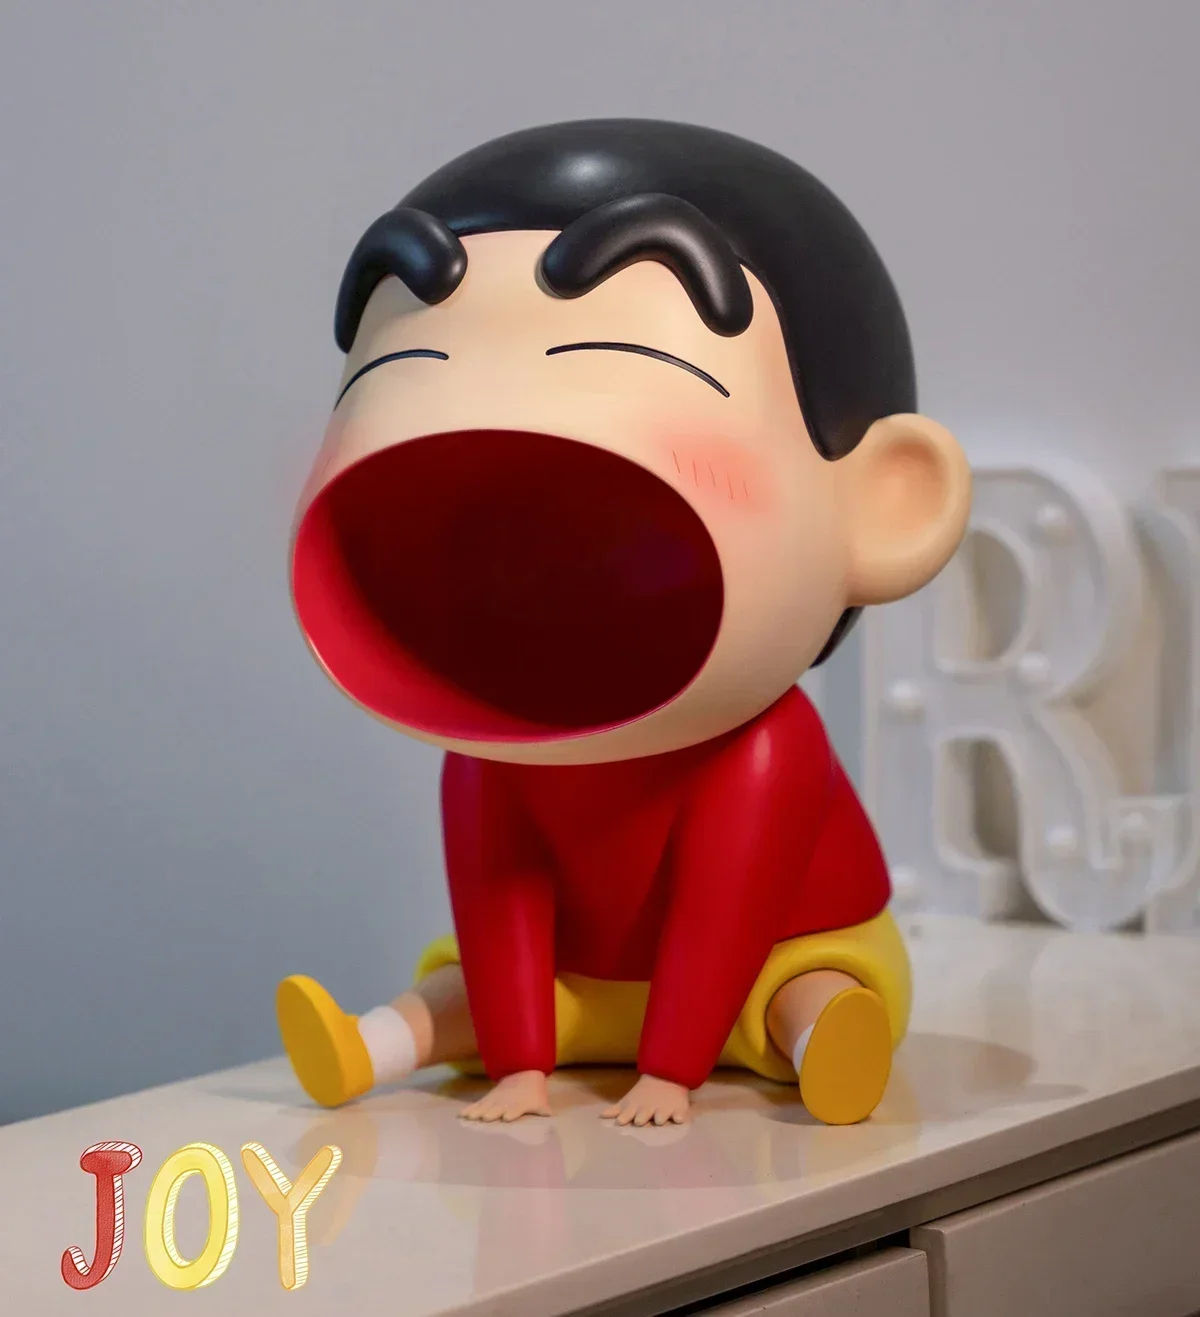 

Новая фигурка Crayon Shin-chan 35 см, мультяшный персонаж Ah ~ большой рот, маленькая статуя Gk, оригинальная аниме-фигурка, декоративная игрушка